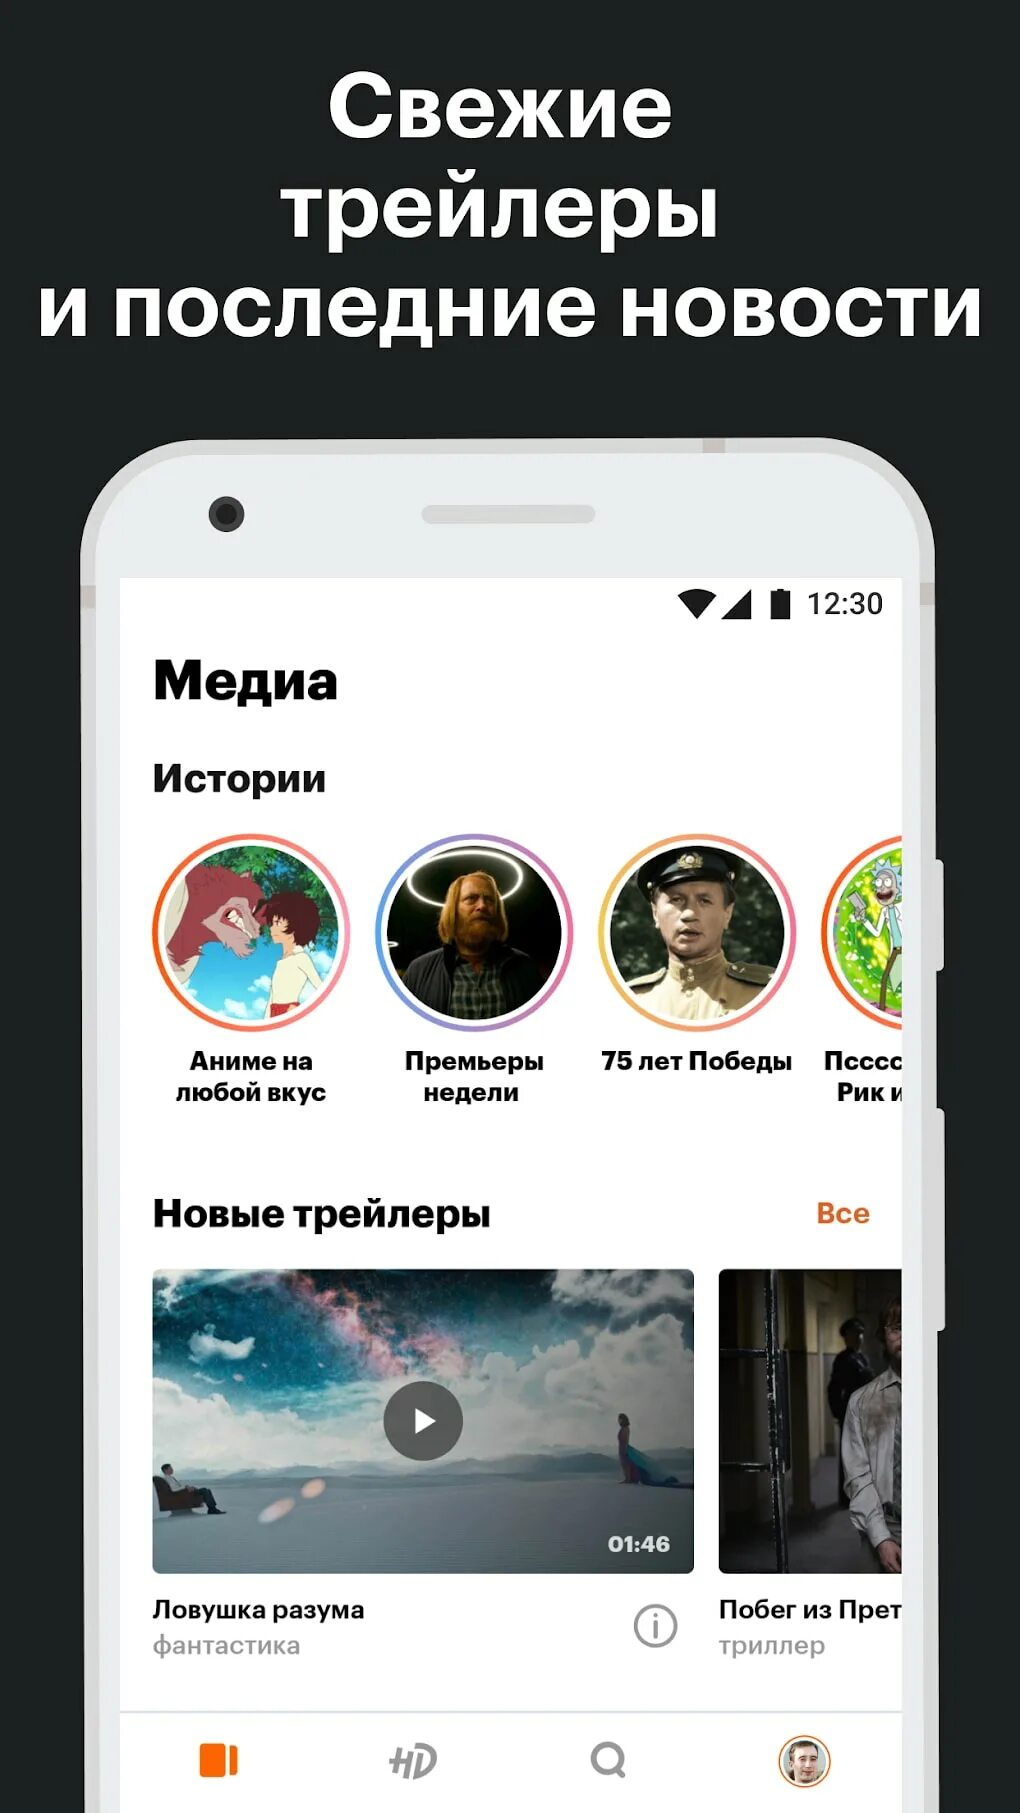 КИНОПОИСК Android. КИНОПОИСК приложение для андроид. КИНОПОИСК андроид ТВ. Kinopoisk Android.